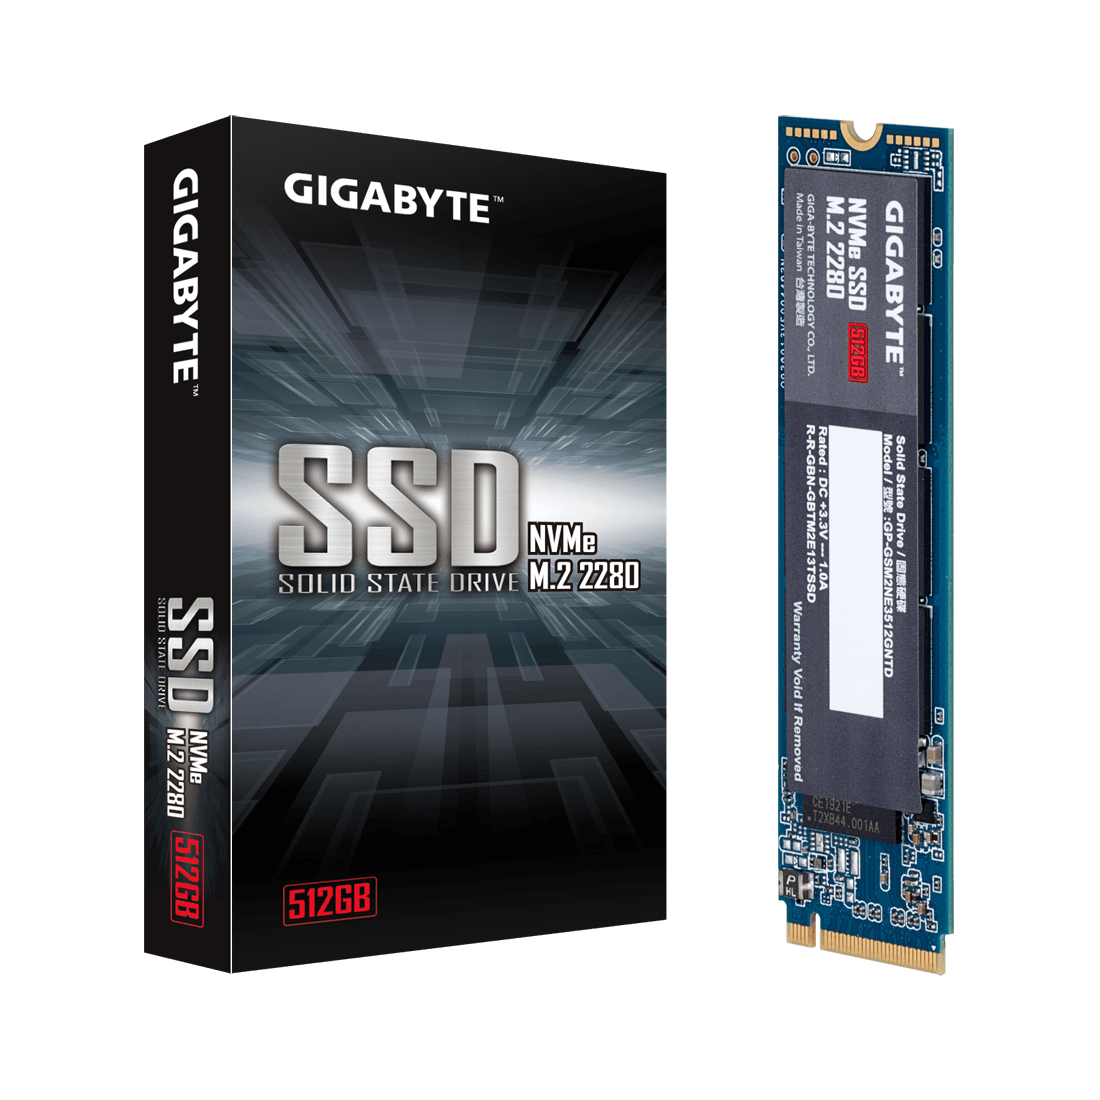 картинка Твердотельный накопитель внутренний Gigabyte GP-GSM2NE3512GNTD 512GB M.2 PCI-E 3.0x4 от магазина itmag.kz